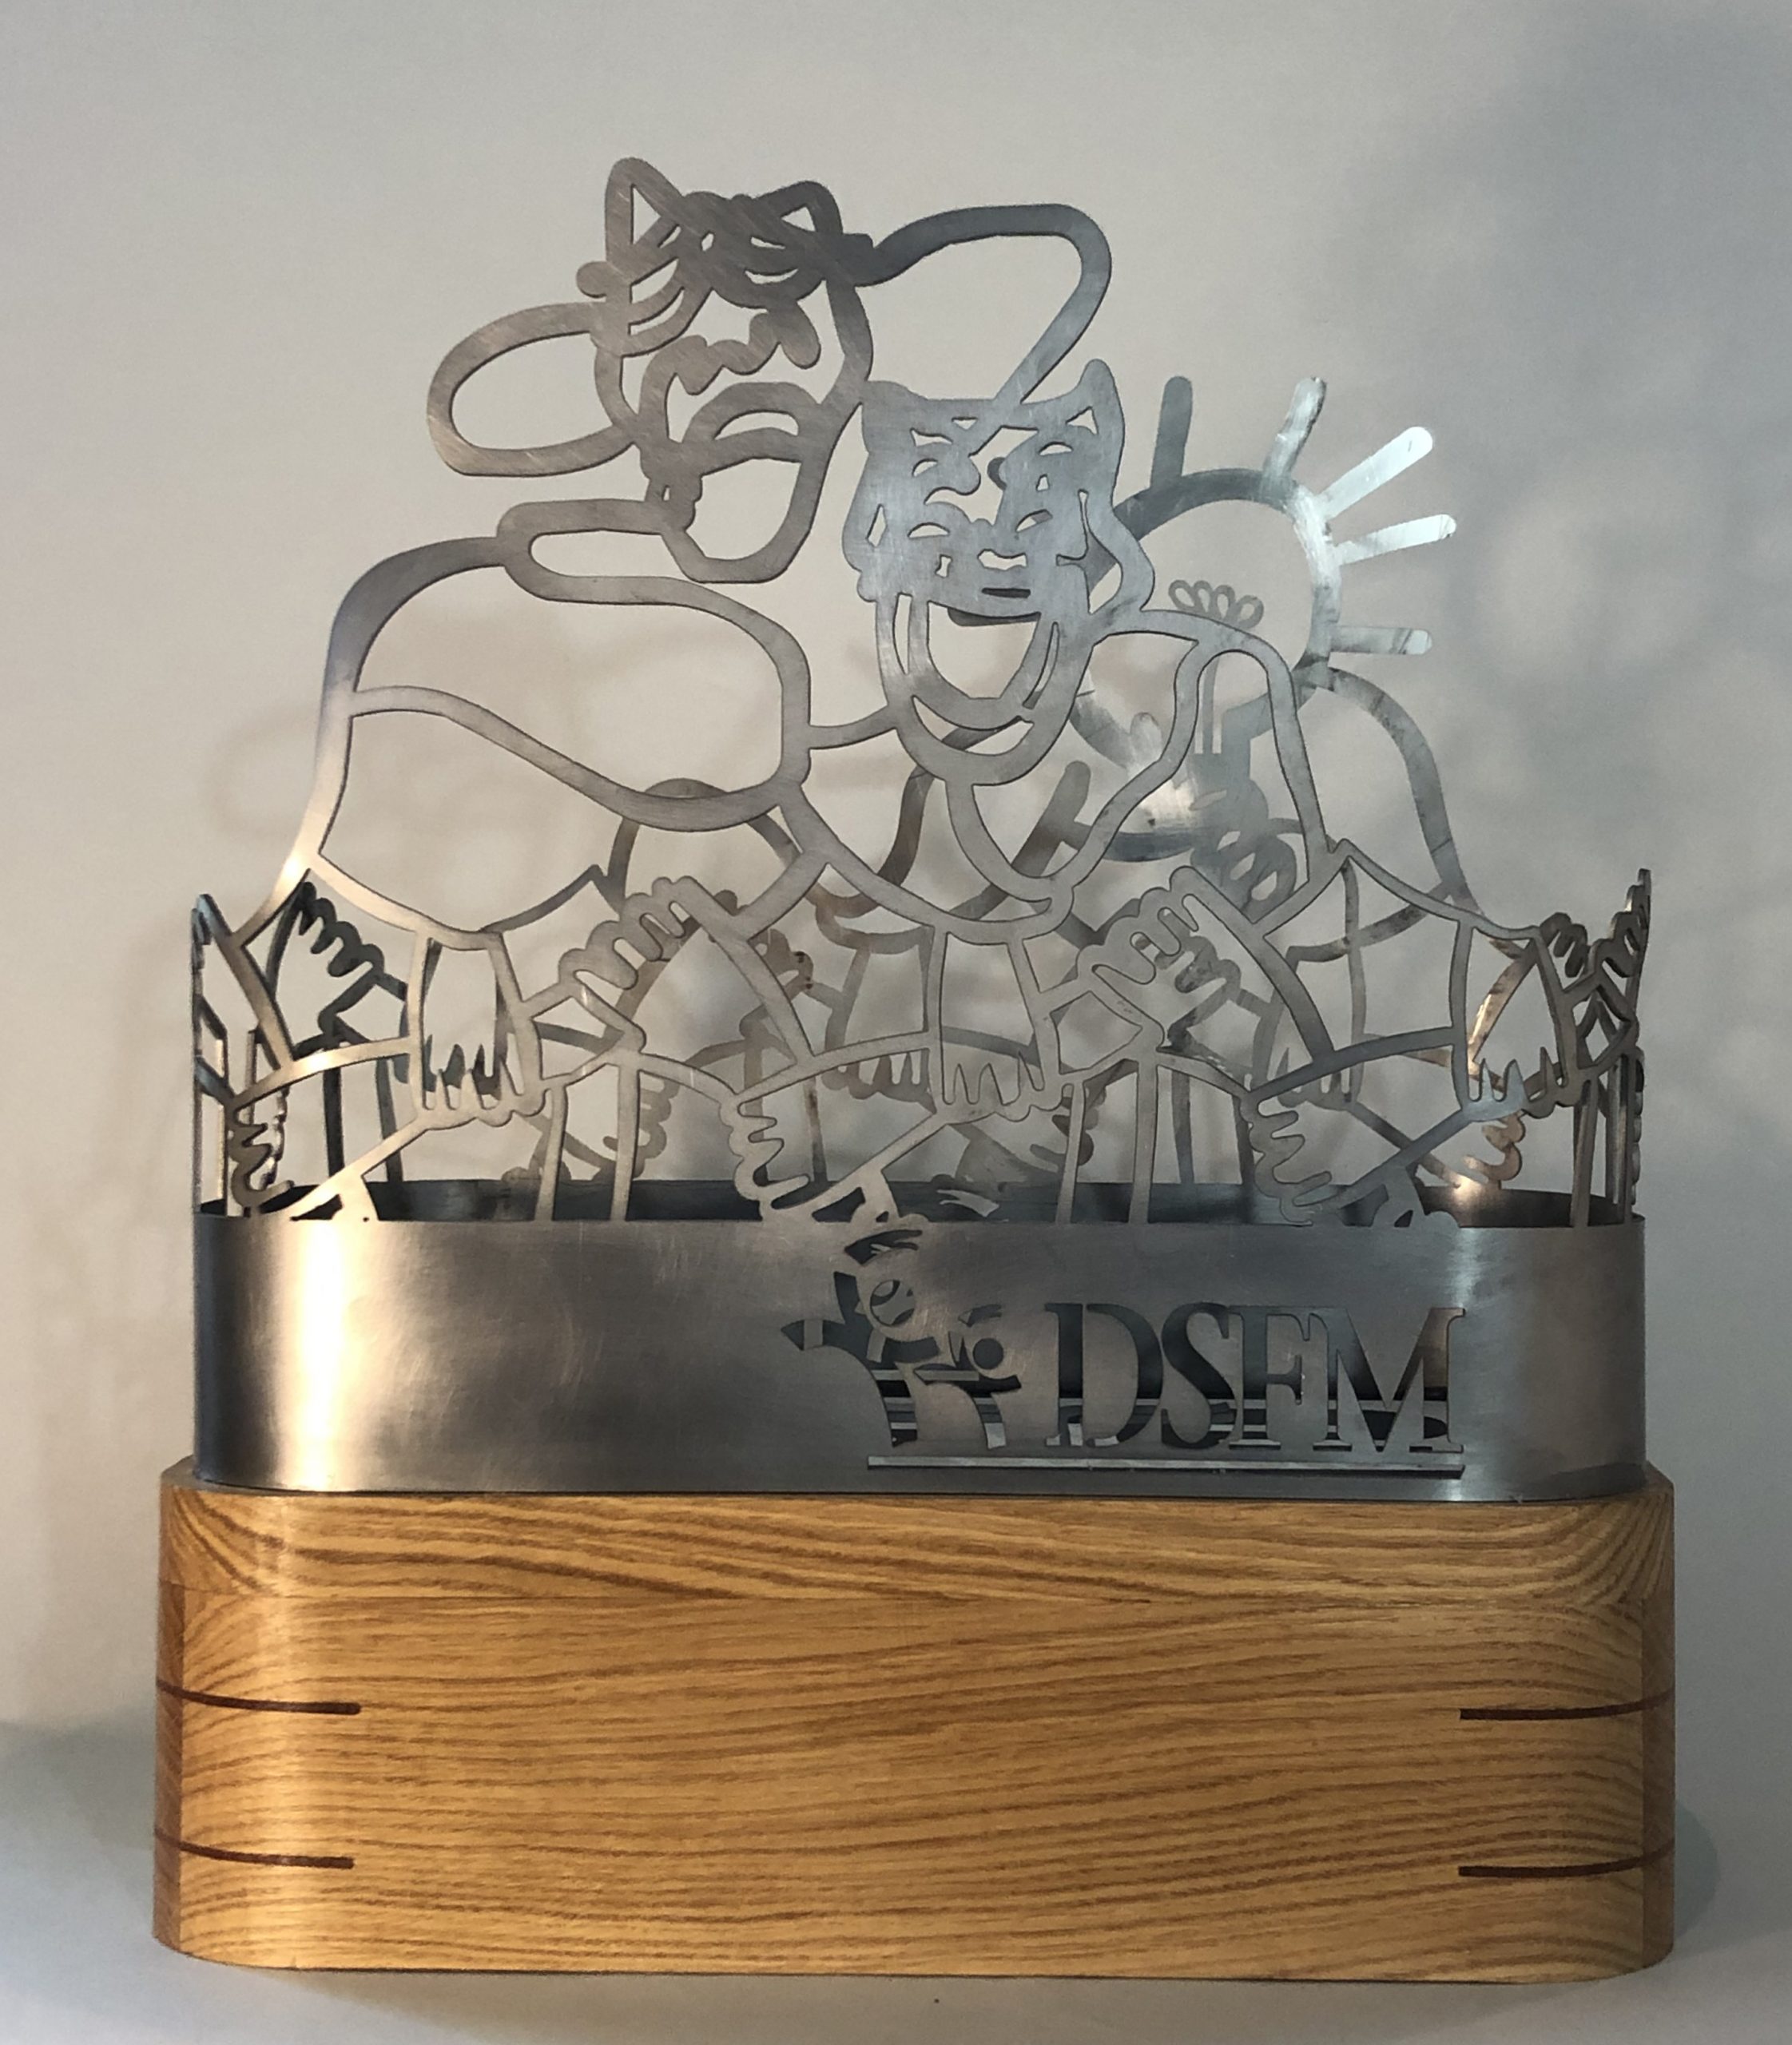 Trophy for La Liste (DSFM)